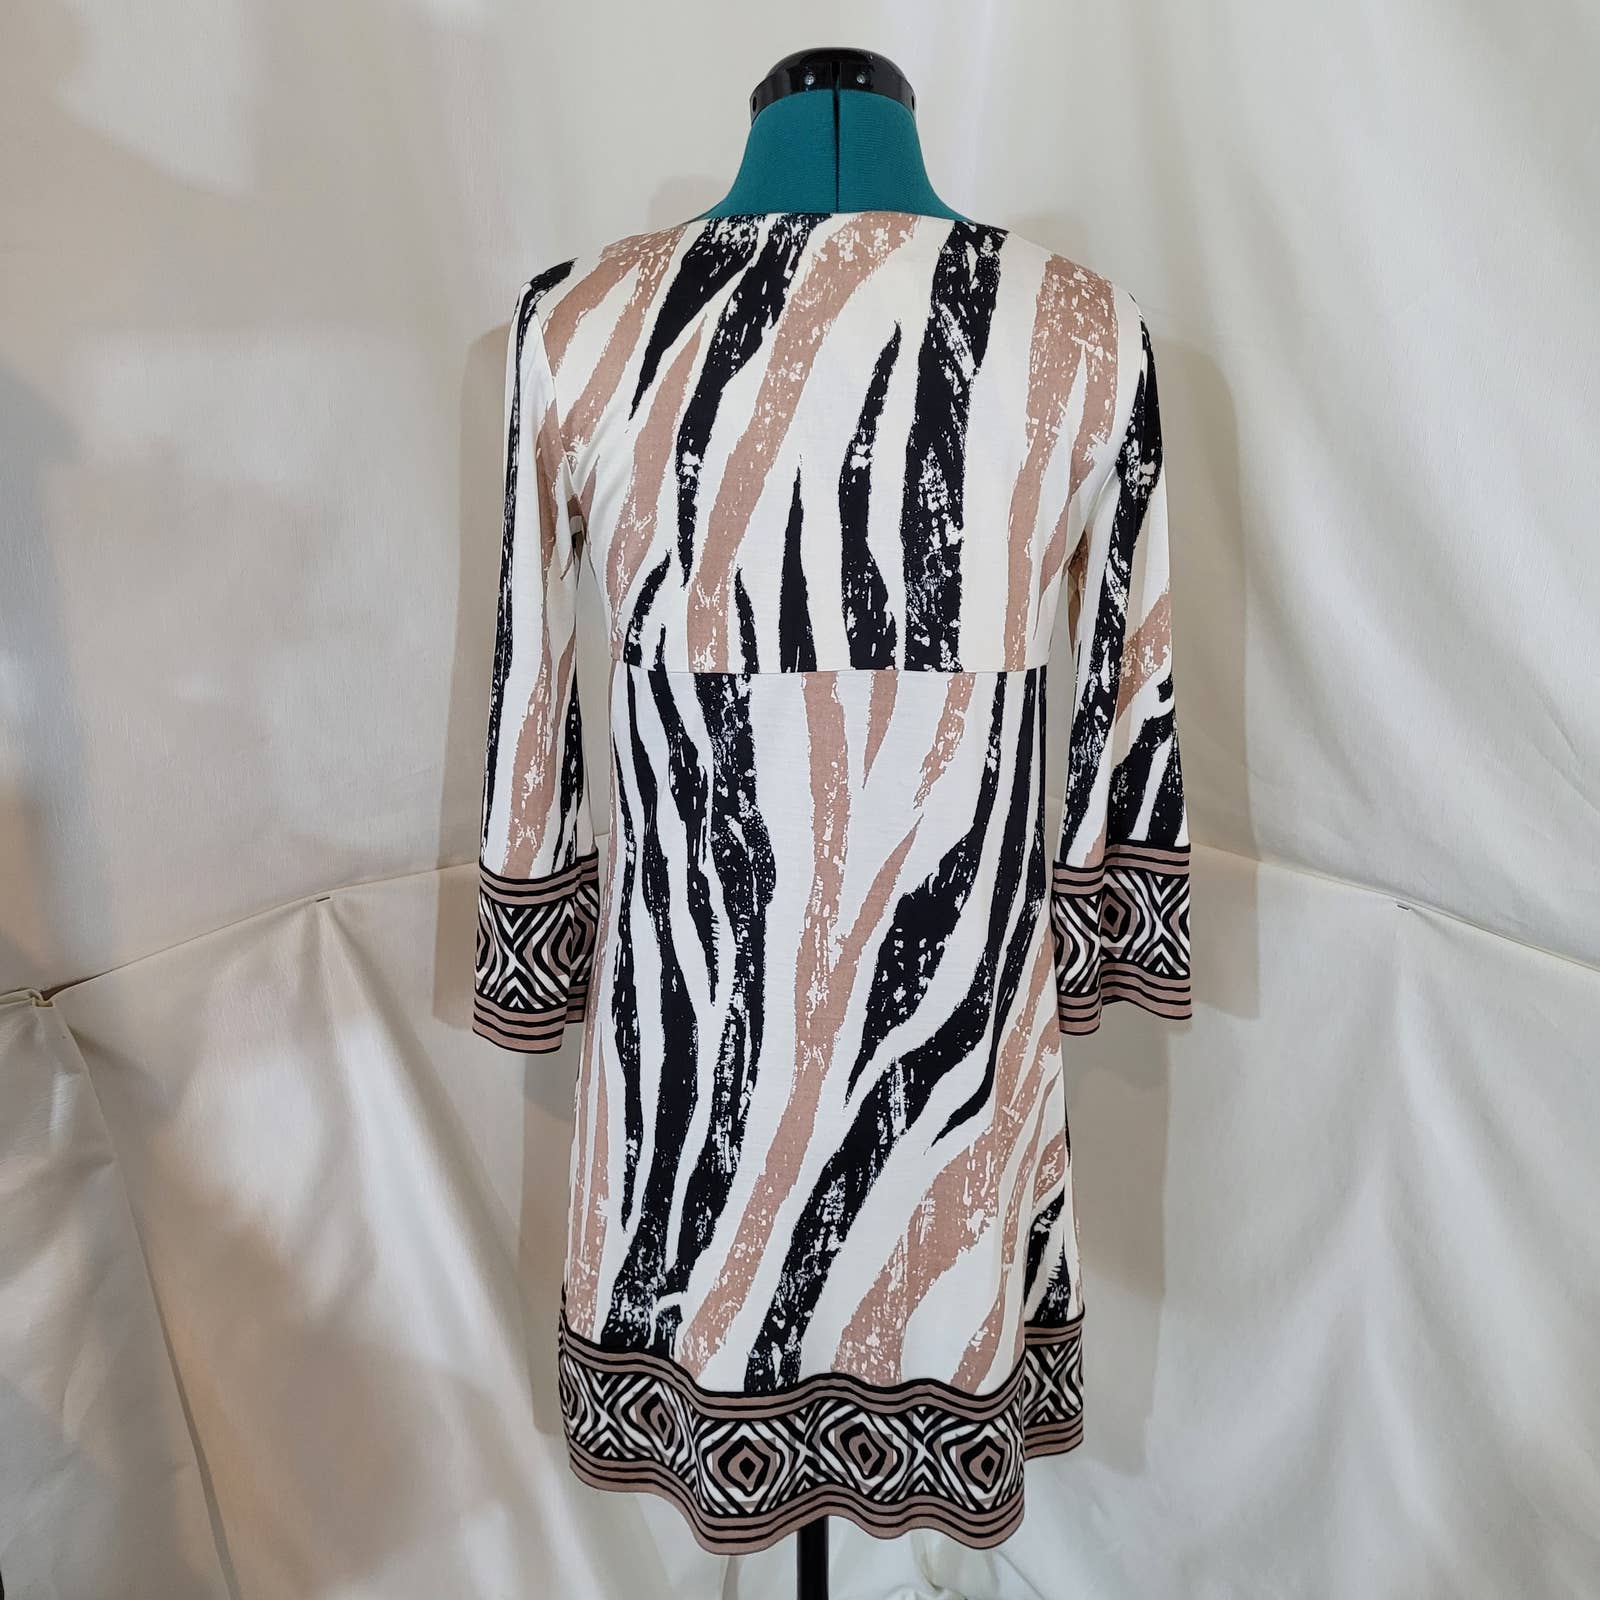 Diane Von Furstenberg Vintage Laetitia Silk Dress Animal Print in Neutral TonesMarkita's ClosetDiane von Furstenberg